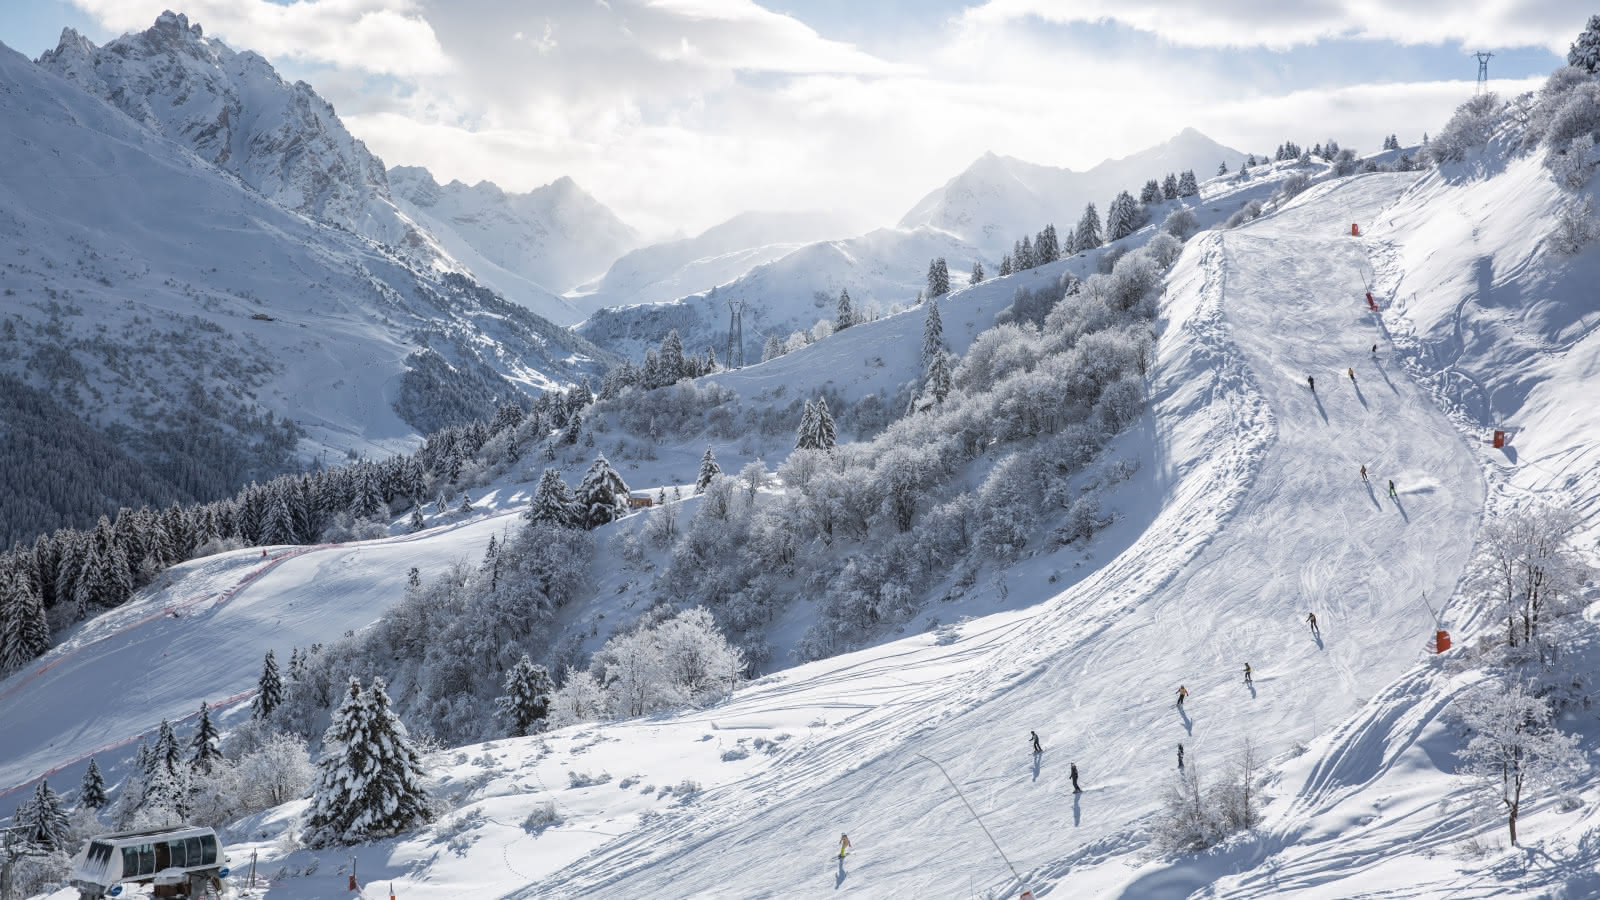 Domaine skiable de Méribel, pour la pratique du ski alpin avec vue montagne